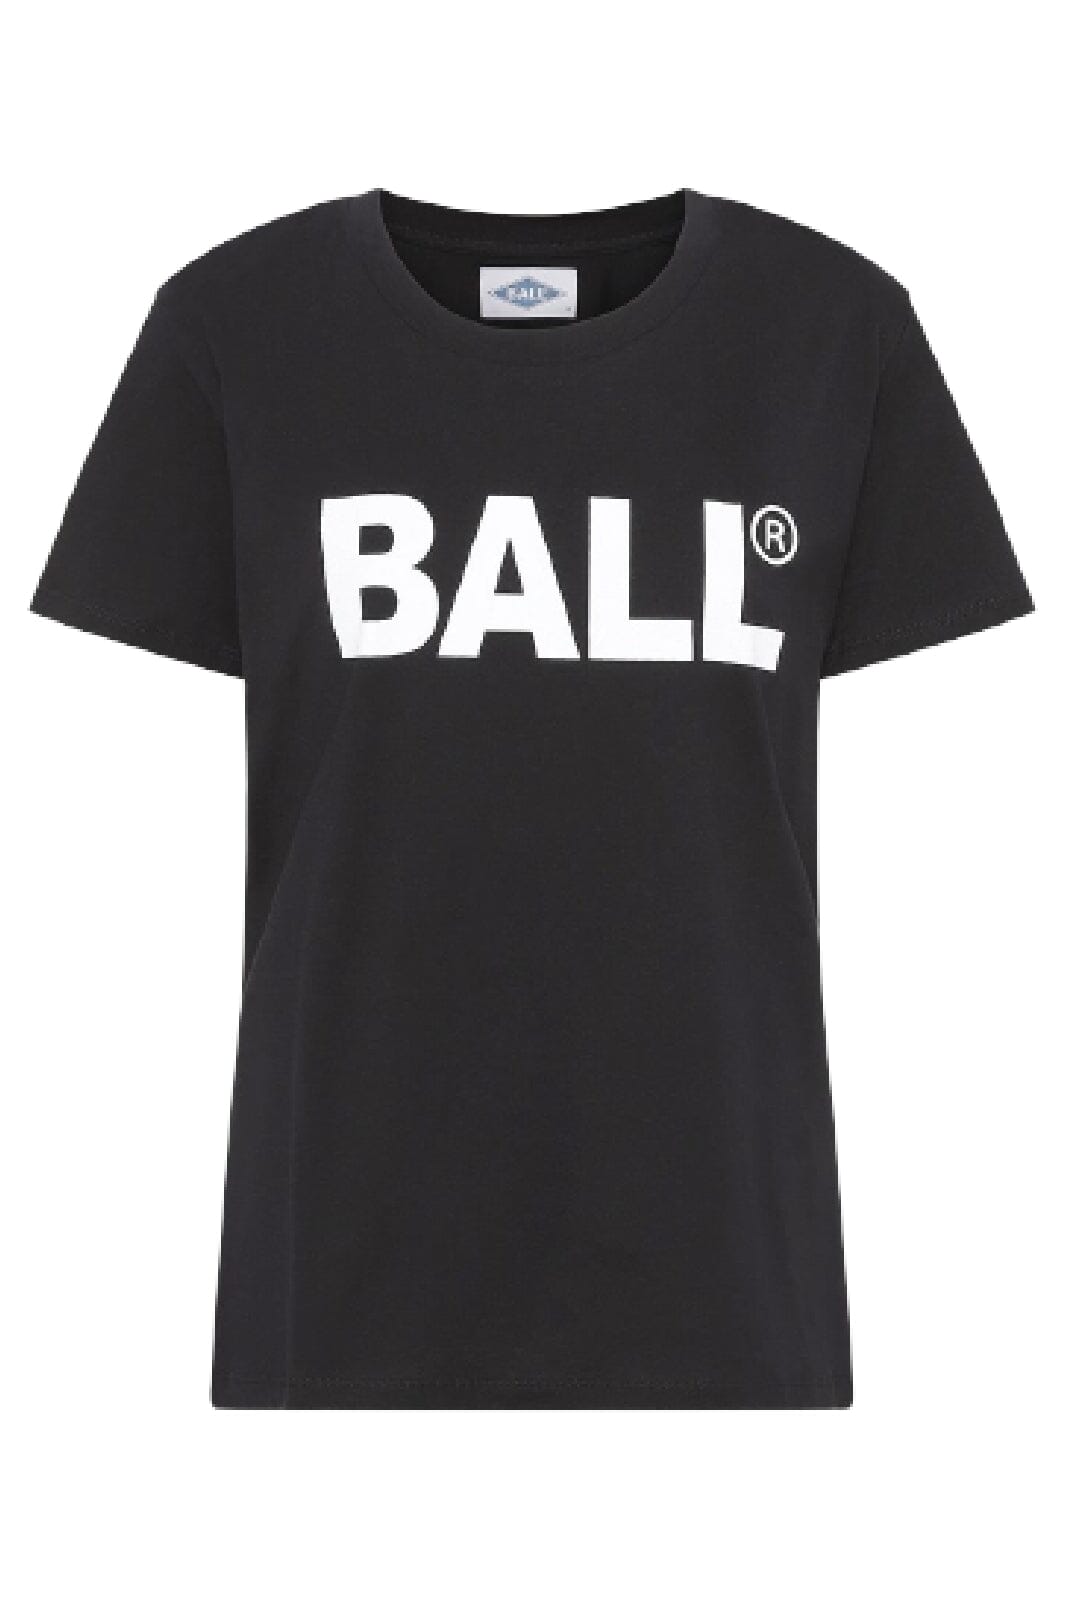 Ball - H Long Woman - Black T-shirts 